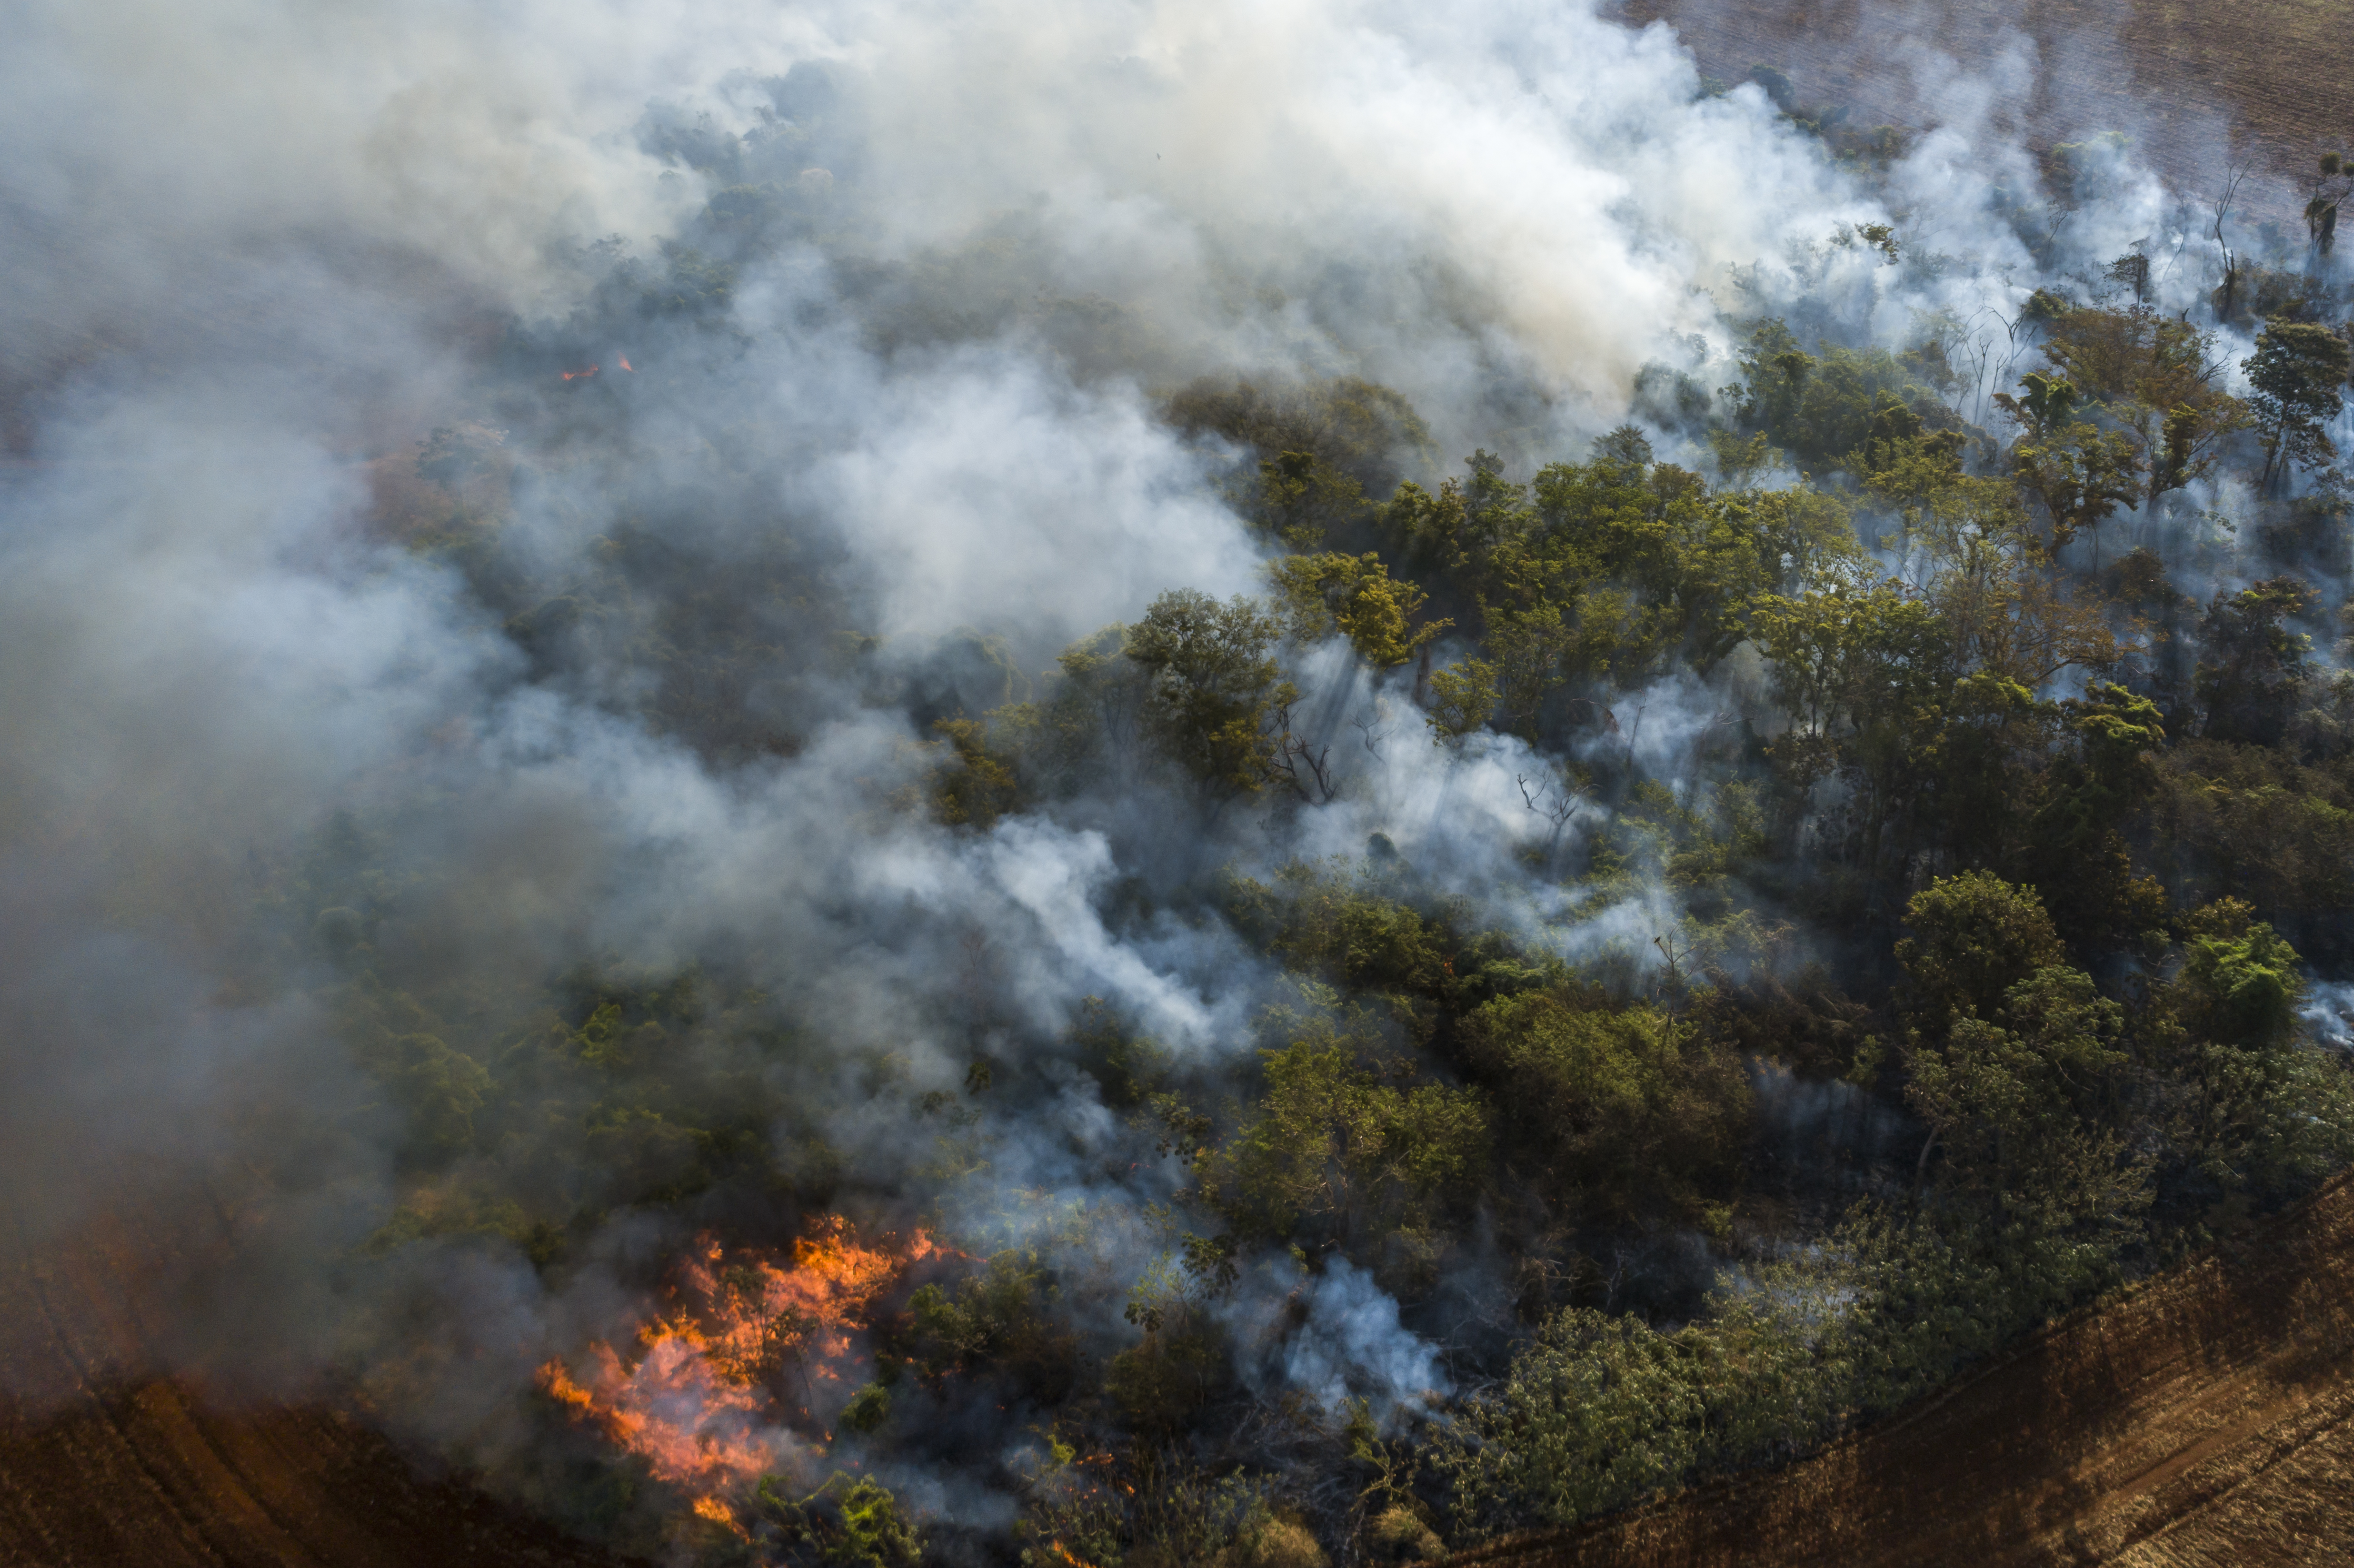 Vista de drone de incêndio florestal provocado em Vilhena, município brasileiro do estado de Rondônia.